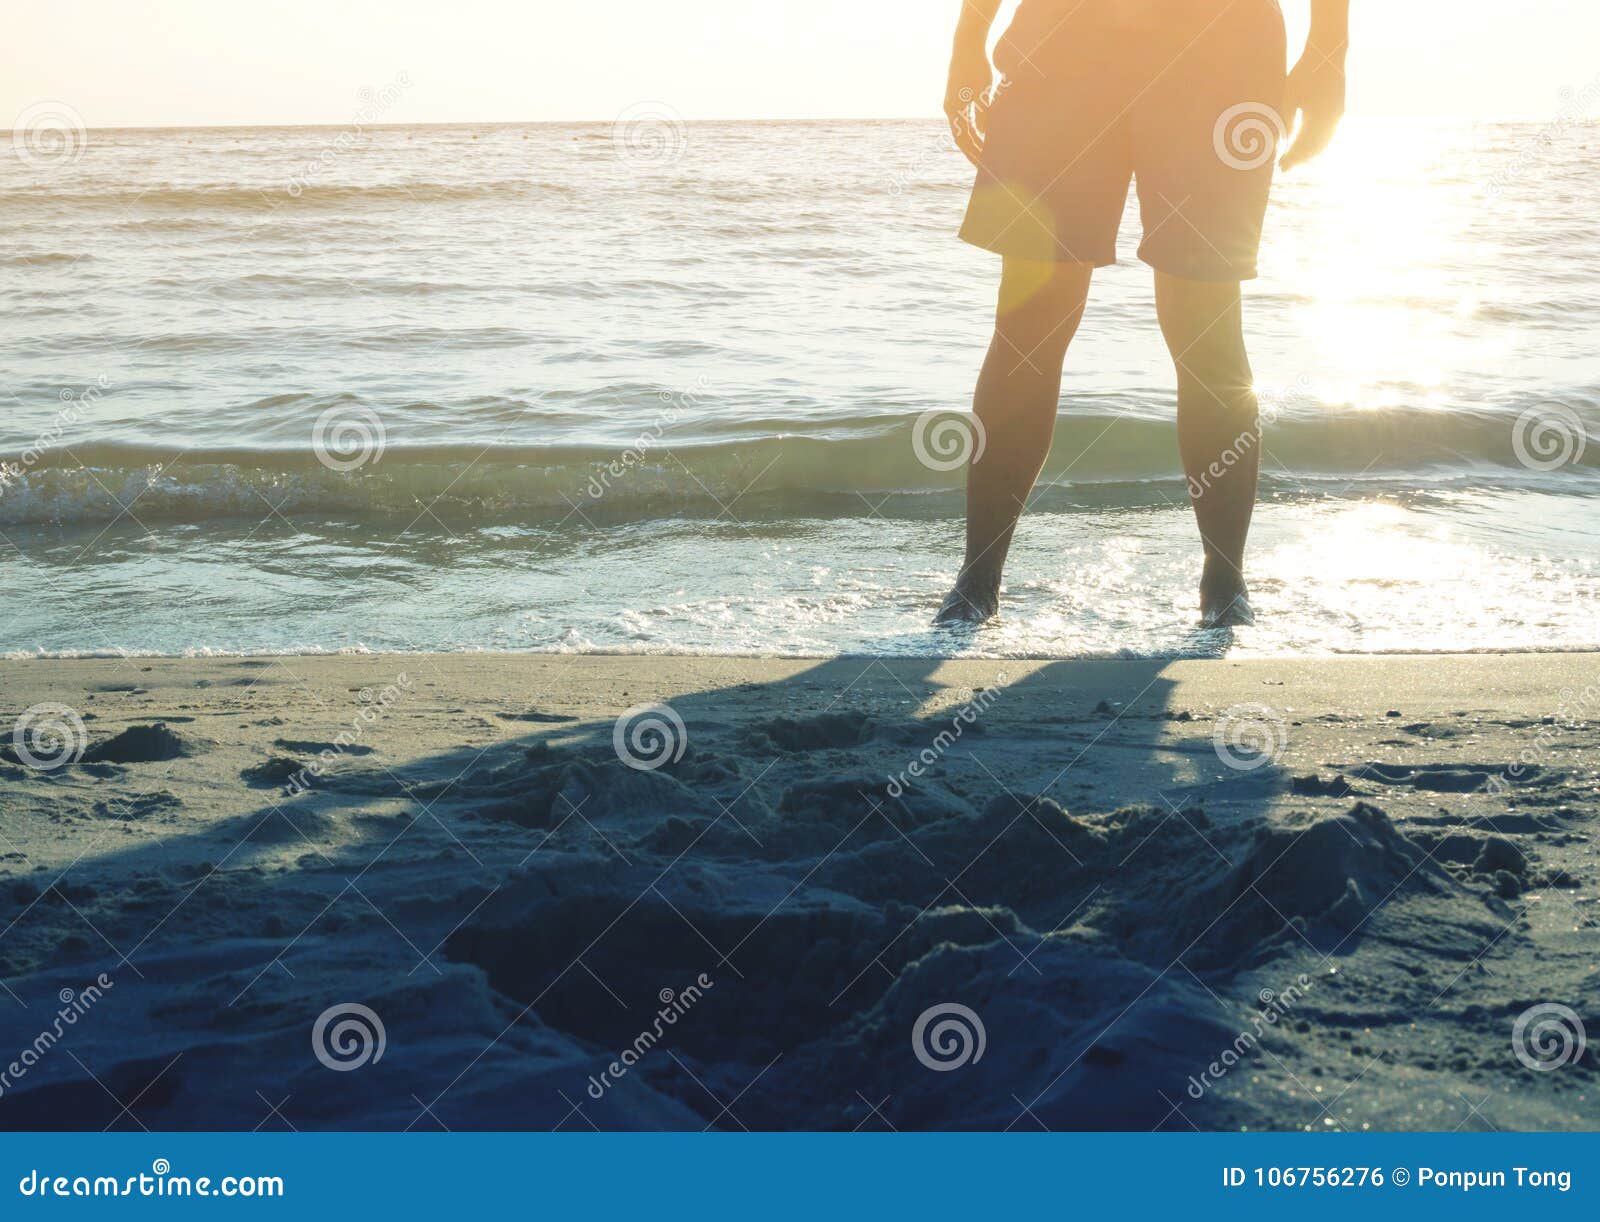 Man Standing At Sunset Beach Stock Photo Image Of Body Beach 106756276